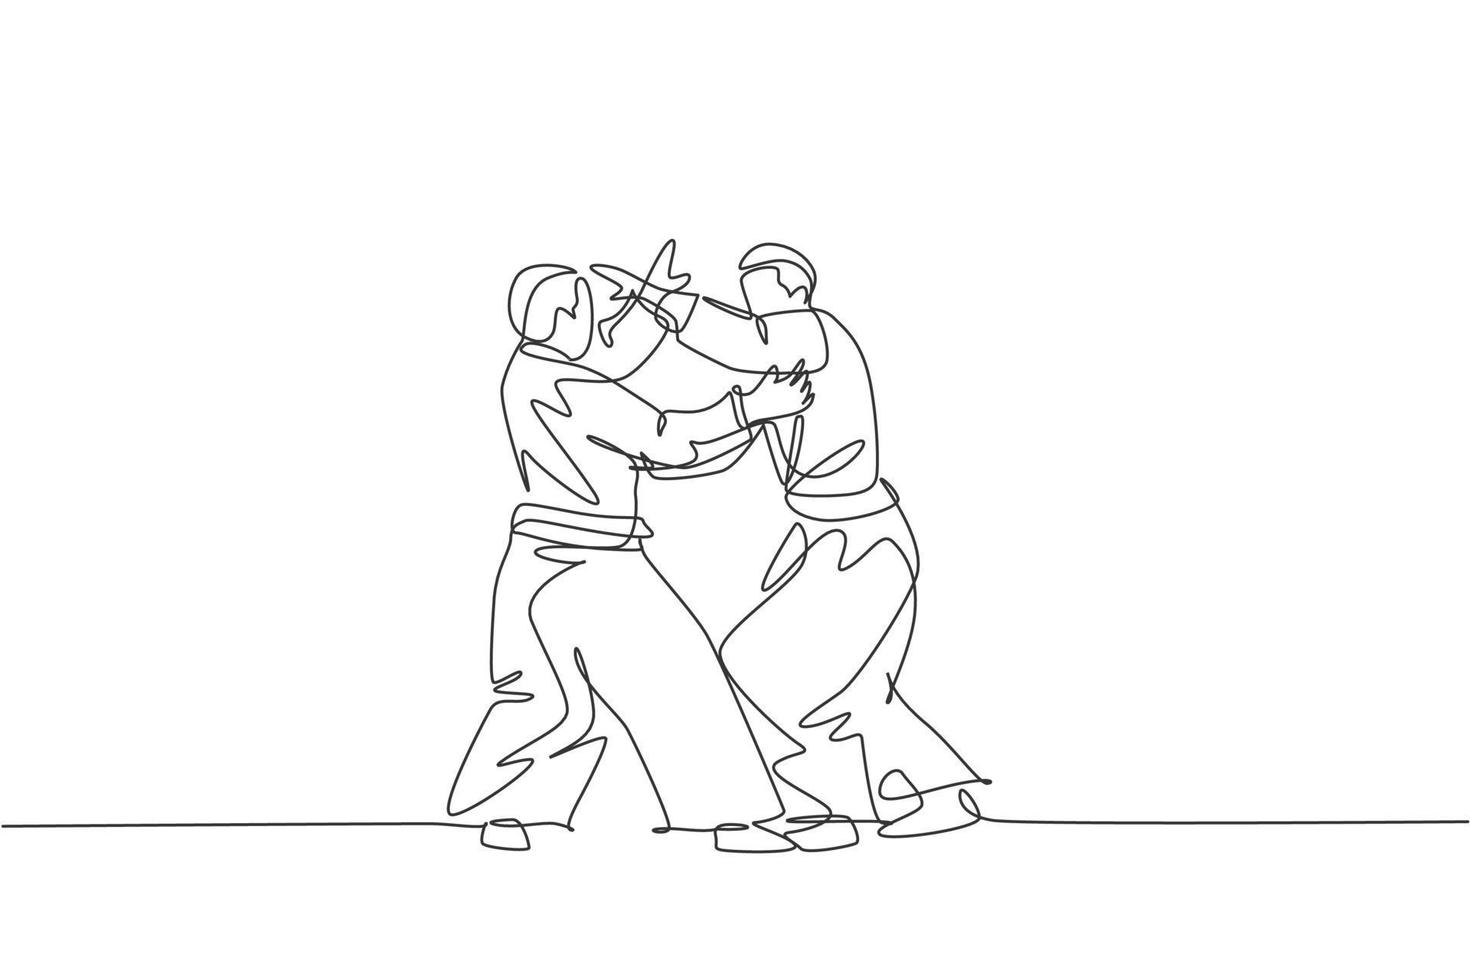 Un solo dibujo de dos hombres enérgicos jóvenes que usan kimono ejercitan la técnica de lucha de aikido en la ilustración de vector de pabellón deportivo. concepto de deporte de estilo de vida saludable. diseño moderno de dibujo de línea continua